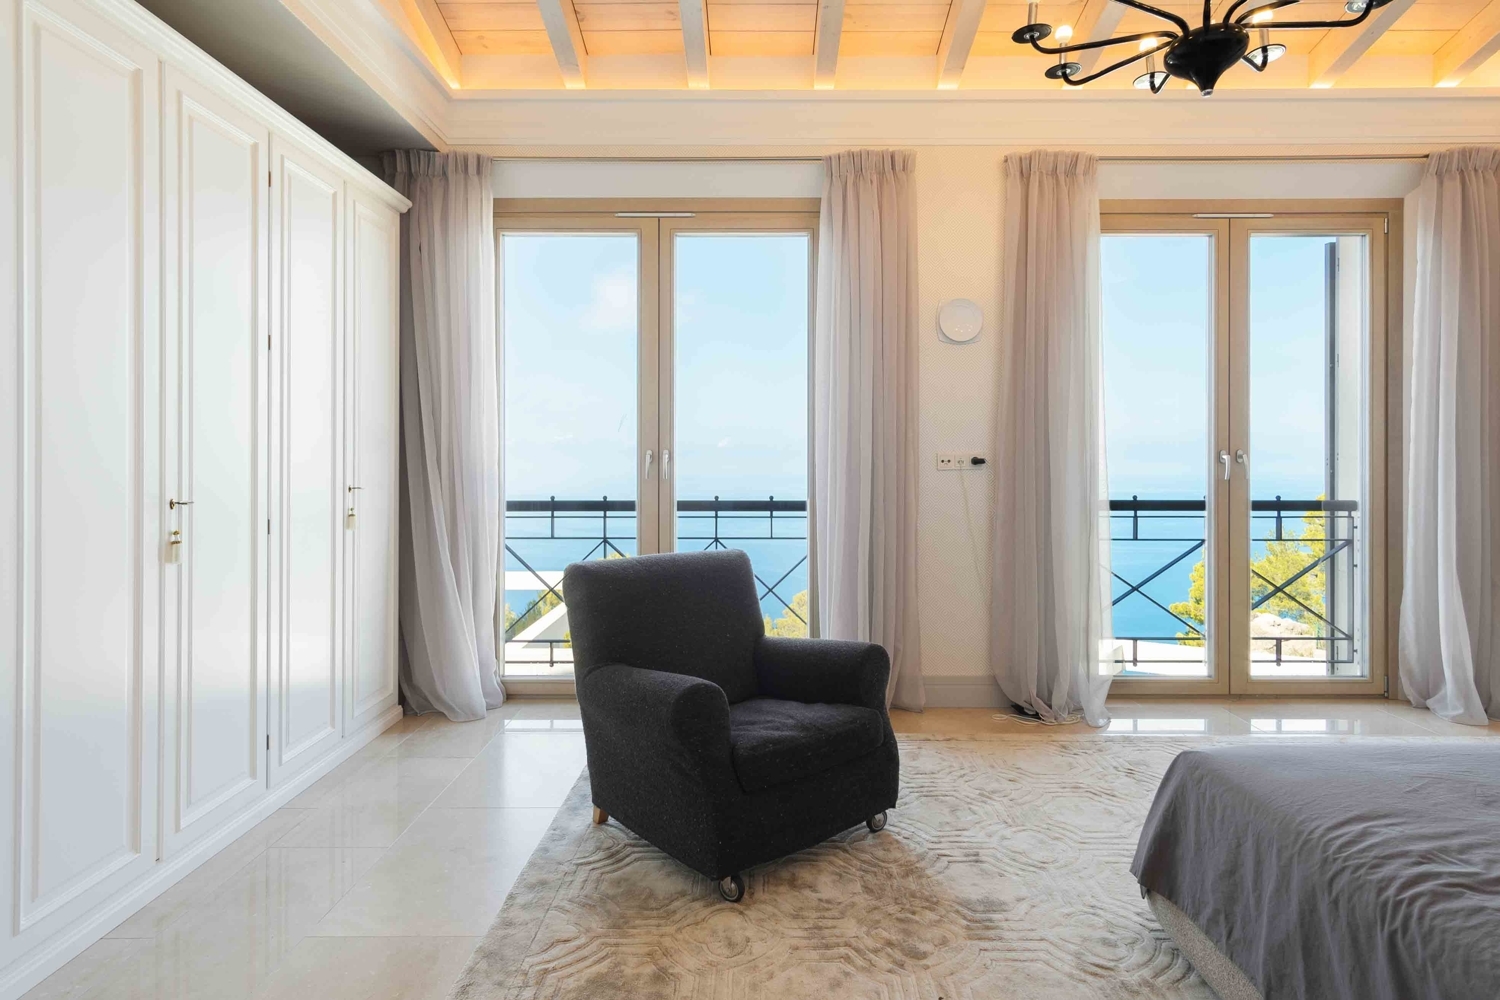 Luxuriöse Villa mit atemberaubender Aussicht in einer privilegierten Wohnanlage in Valldemossa